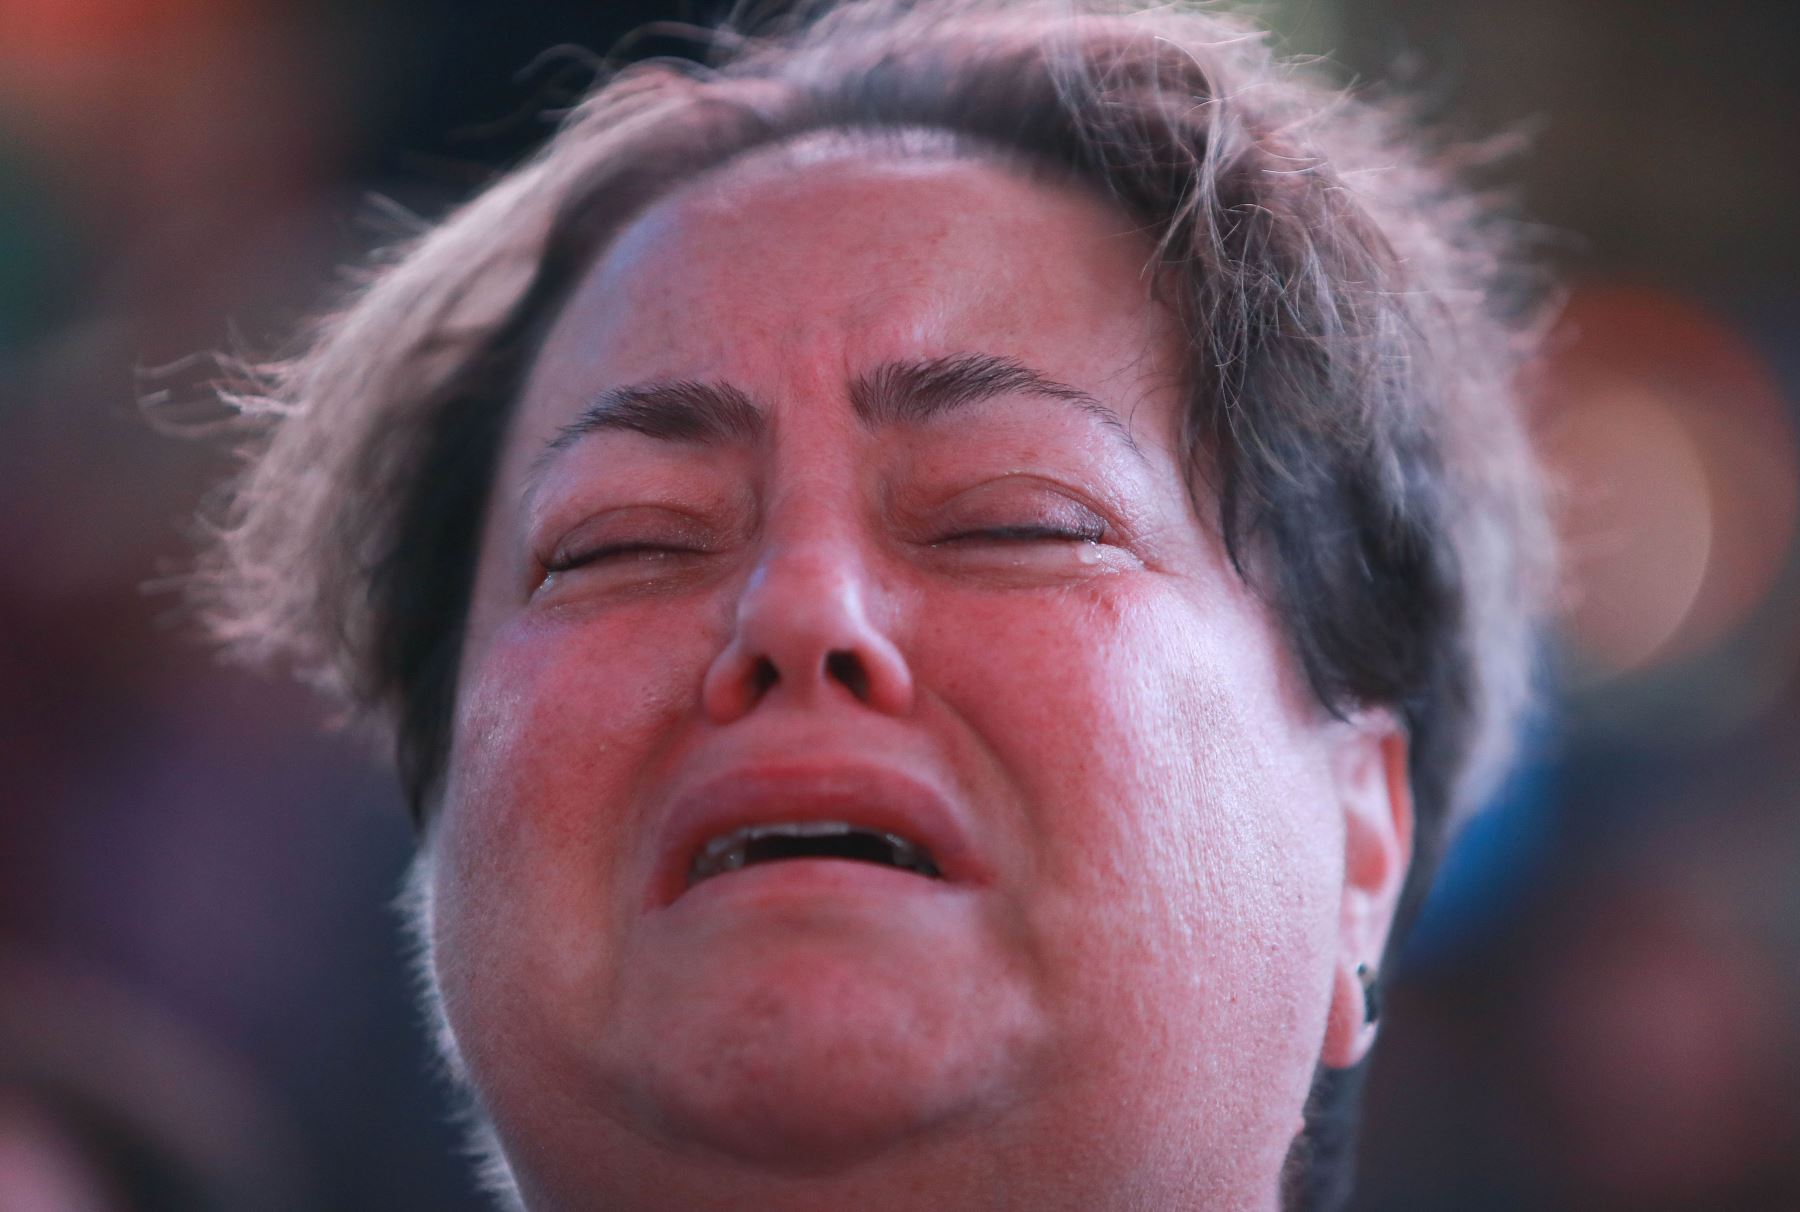 09/11/2016.  Partidarios de Hillary Clinton reaccionan dramáticamente cuando ven los resultados de las elecciones en Estados Unidos. Foto: AFP.